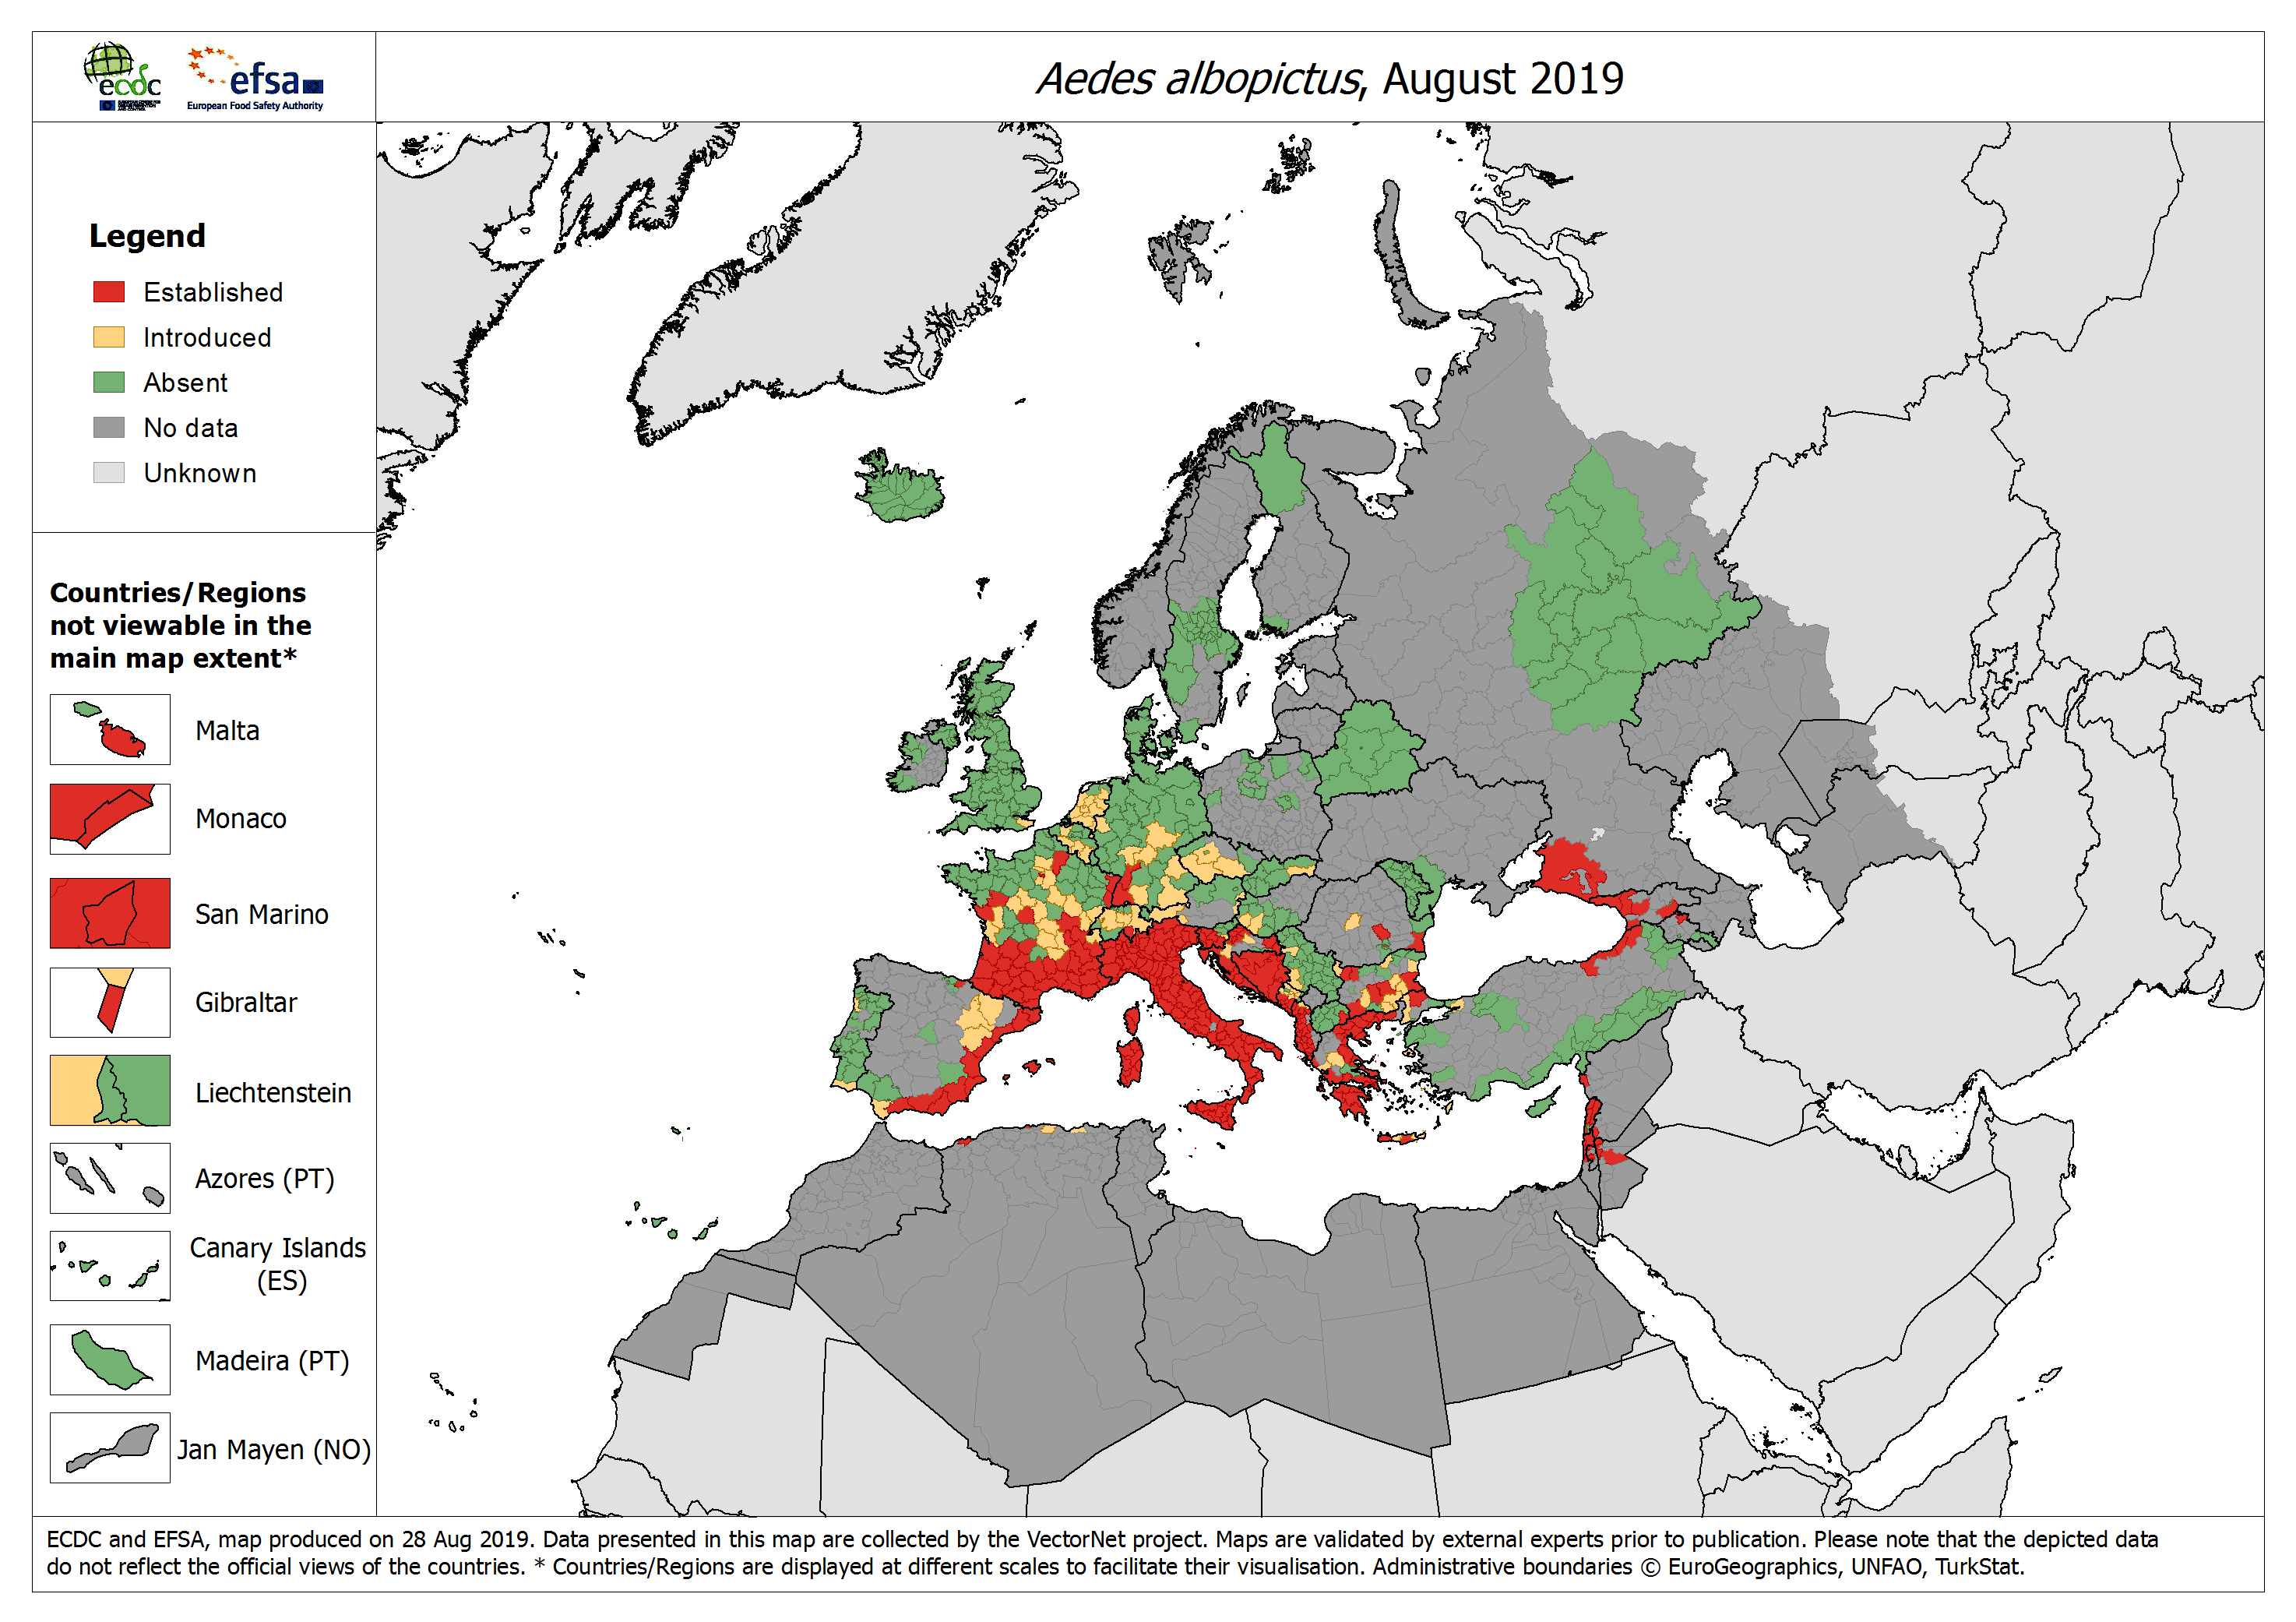 Verbreitung der Aedes albopictus in Europa